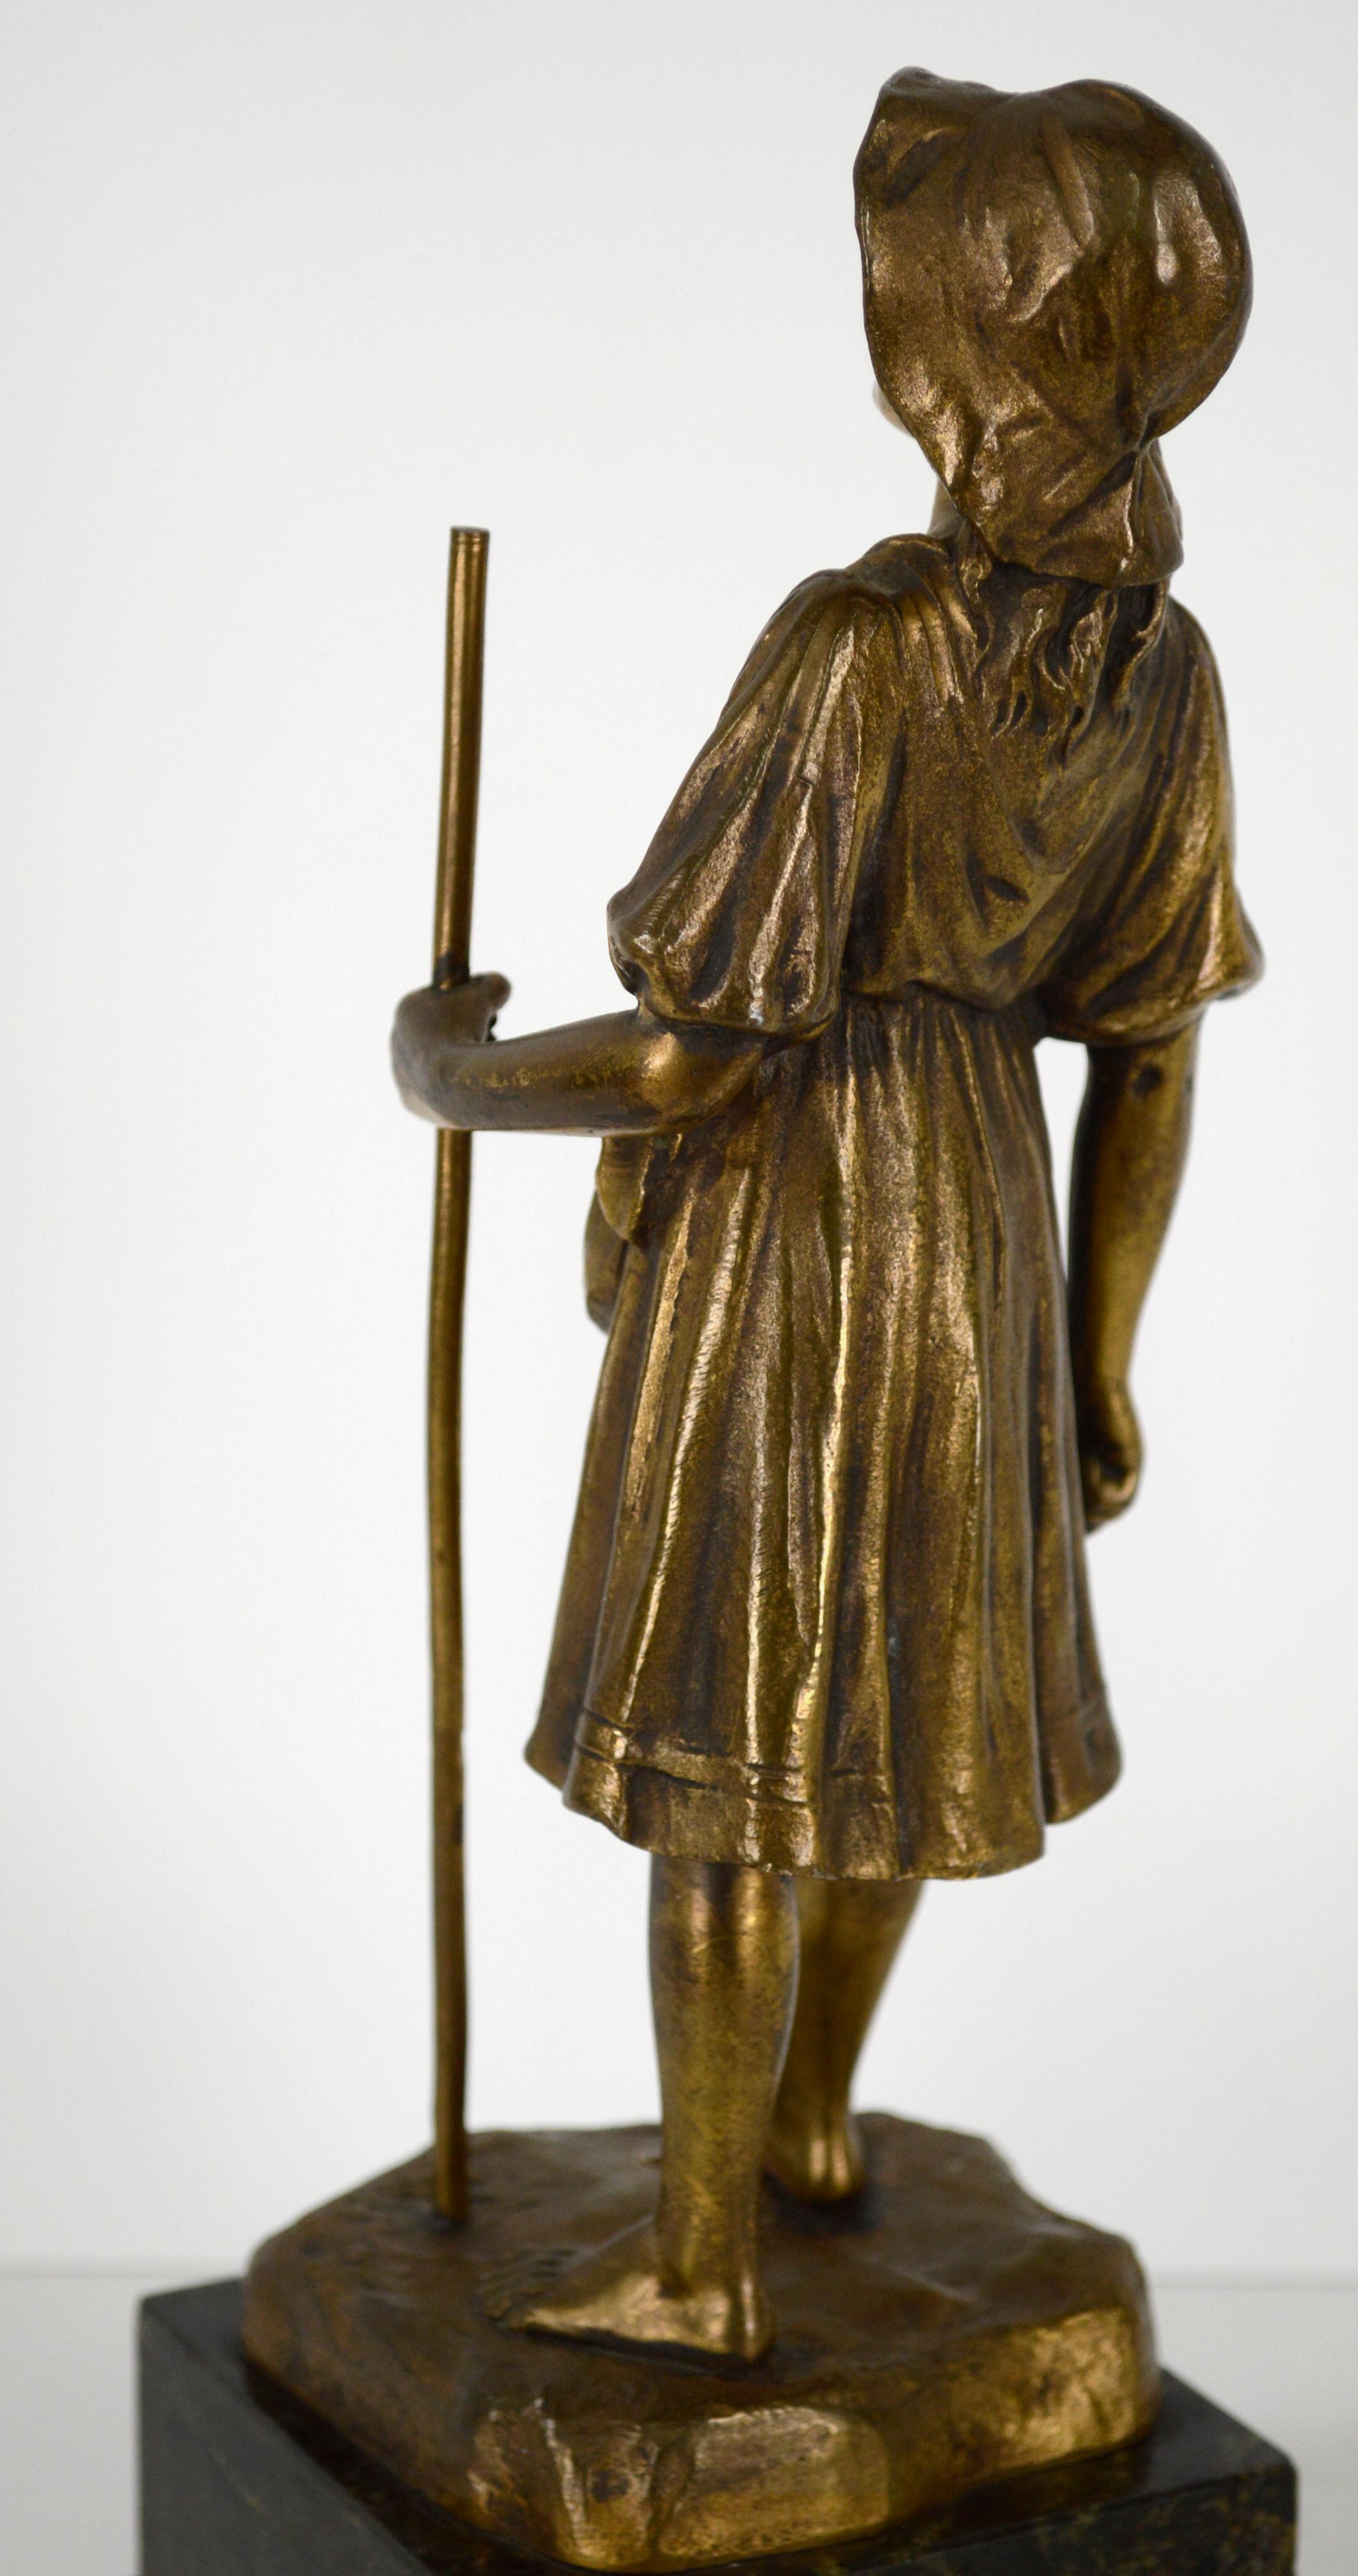 Wunderschöne figurative Miniatur-Bronzeguss-Skulptur eines jungen barfüßigen Hirtenmädchens, das einen Stab hält, von R. Hobold (deutsch, 19. Jh.). Das Mädchen trägt ein wallendes Bauernkleid und einen Schlapphut und steht mit einem Fuß nach vorne,